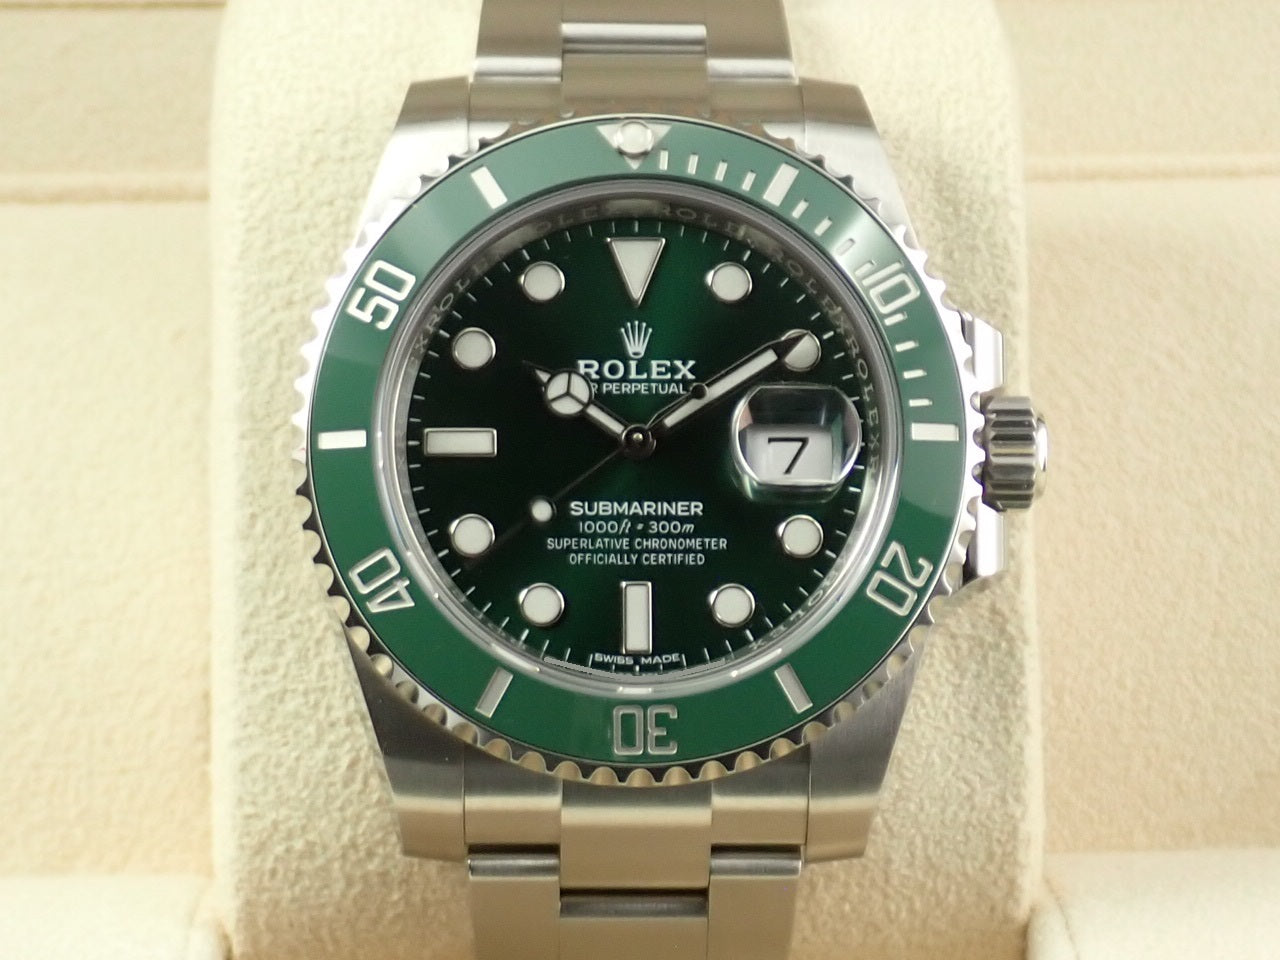 Rolex Submariner Green &lt;Warranty, Box, etc.&gt;